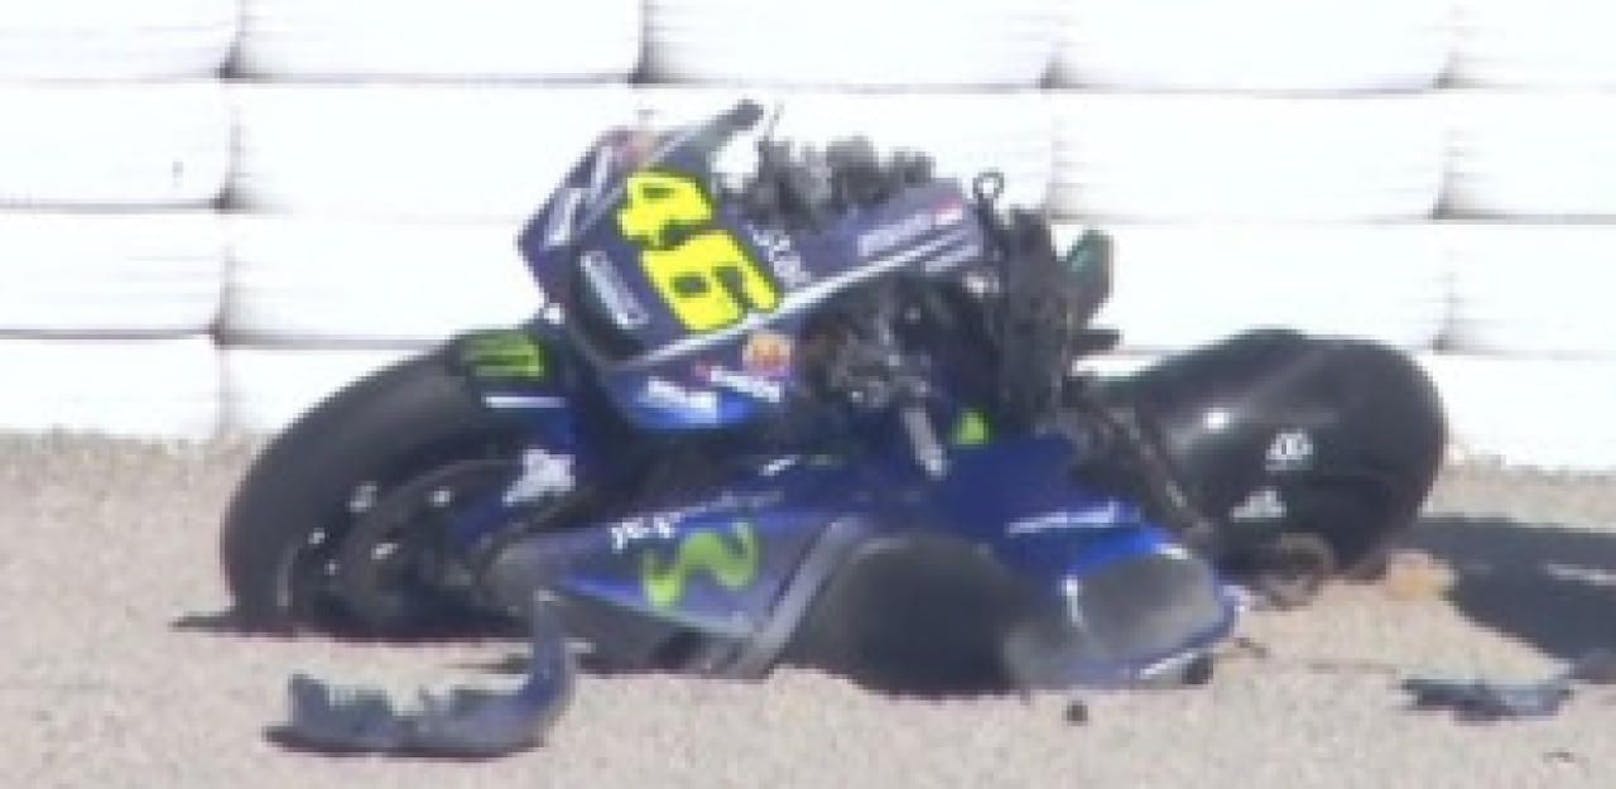 Schwerer Crash! Rossi schrottet MotoGP-Bike